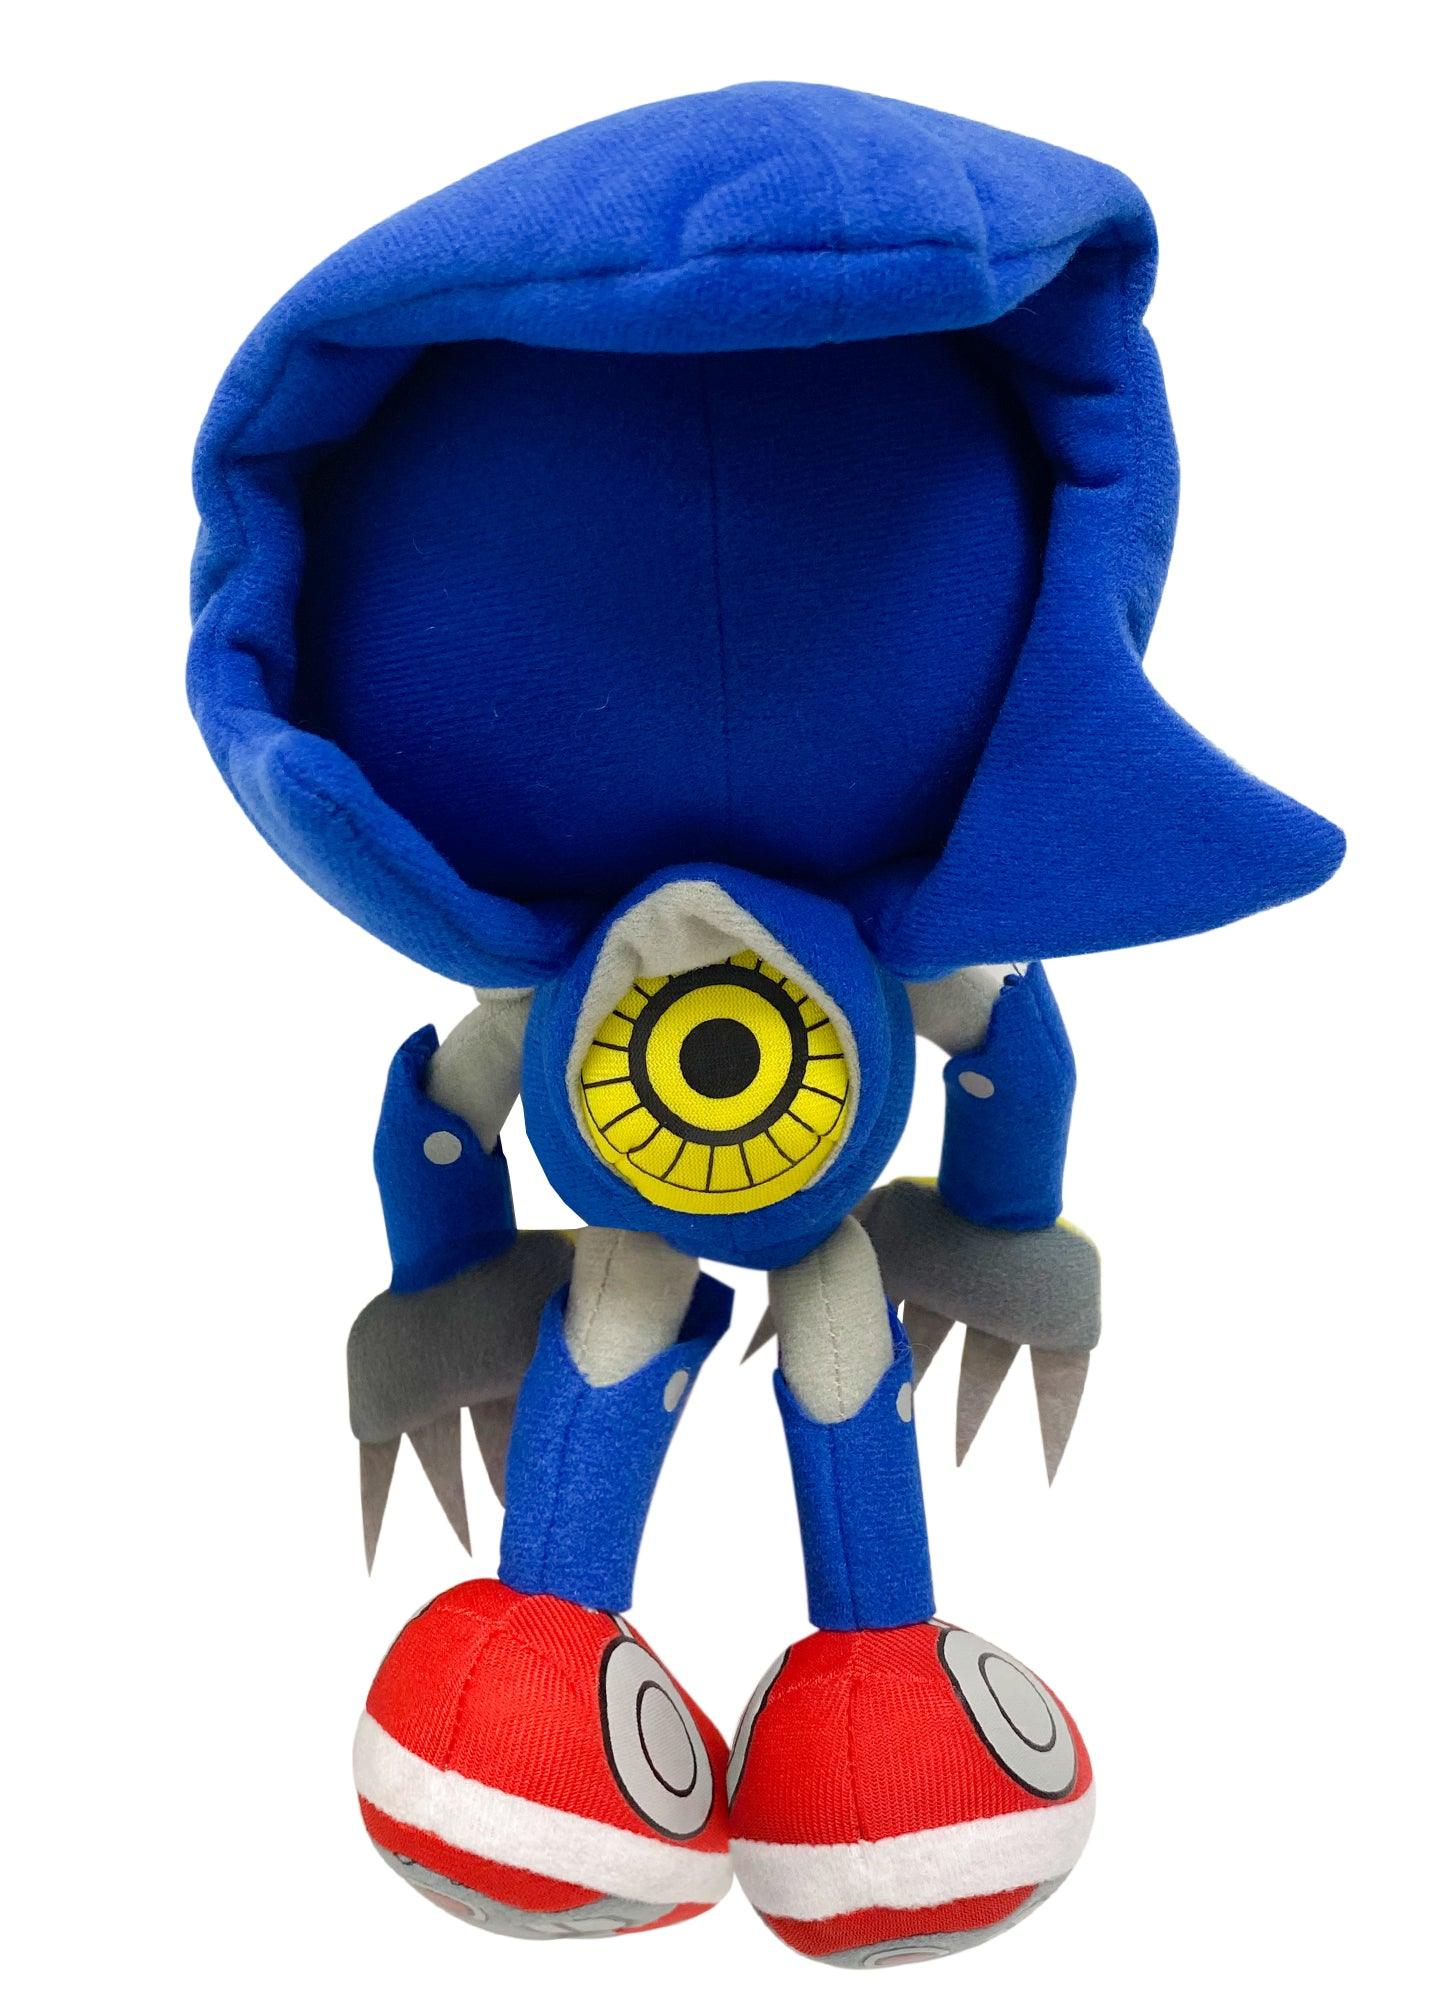 Official METAL SONIC Sonic The Hedgehog 10 in. Plush Great Eastern (Metaru)  699858525232